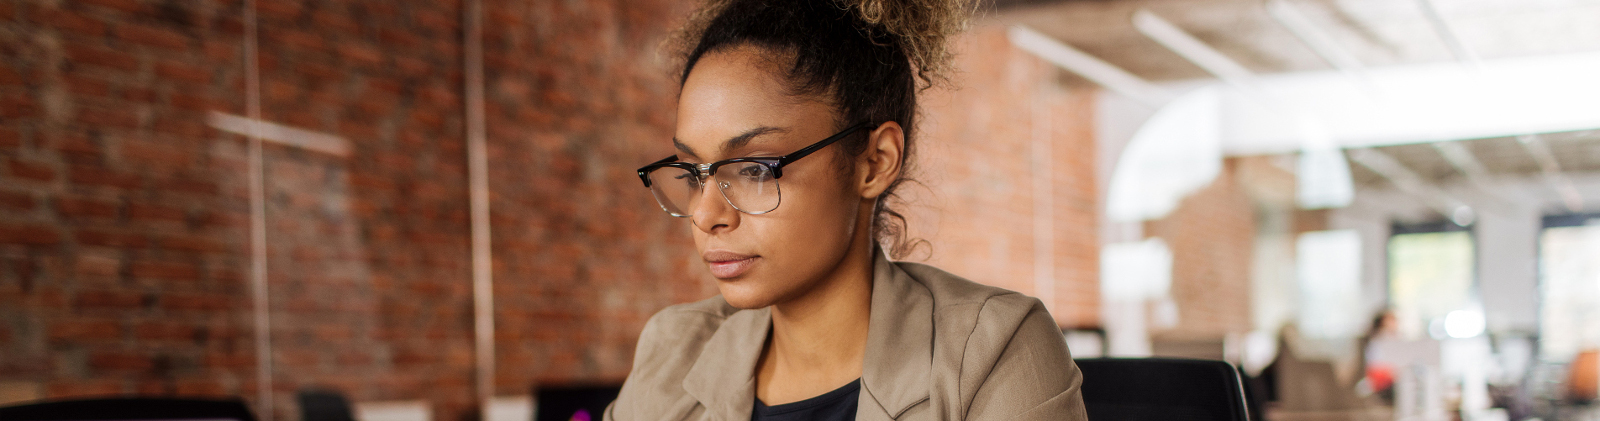 Une femme portant des lunettes s'intéressant à la réforme 100% santé